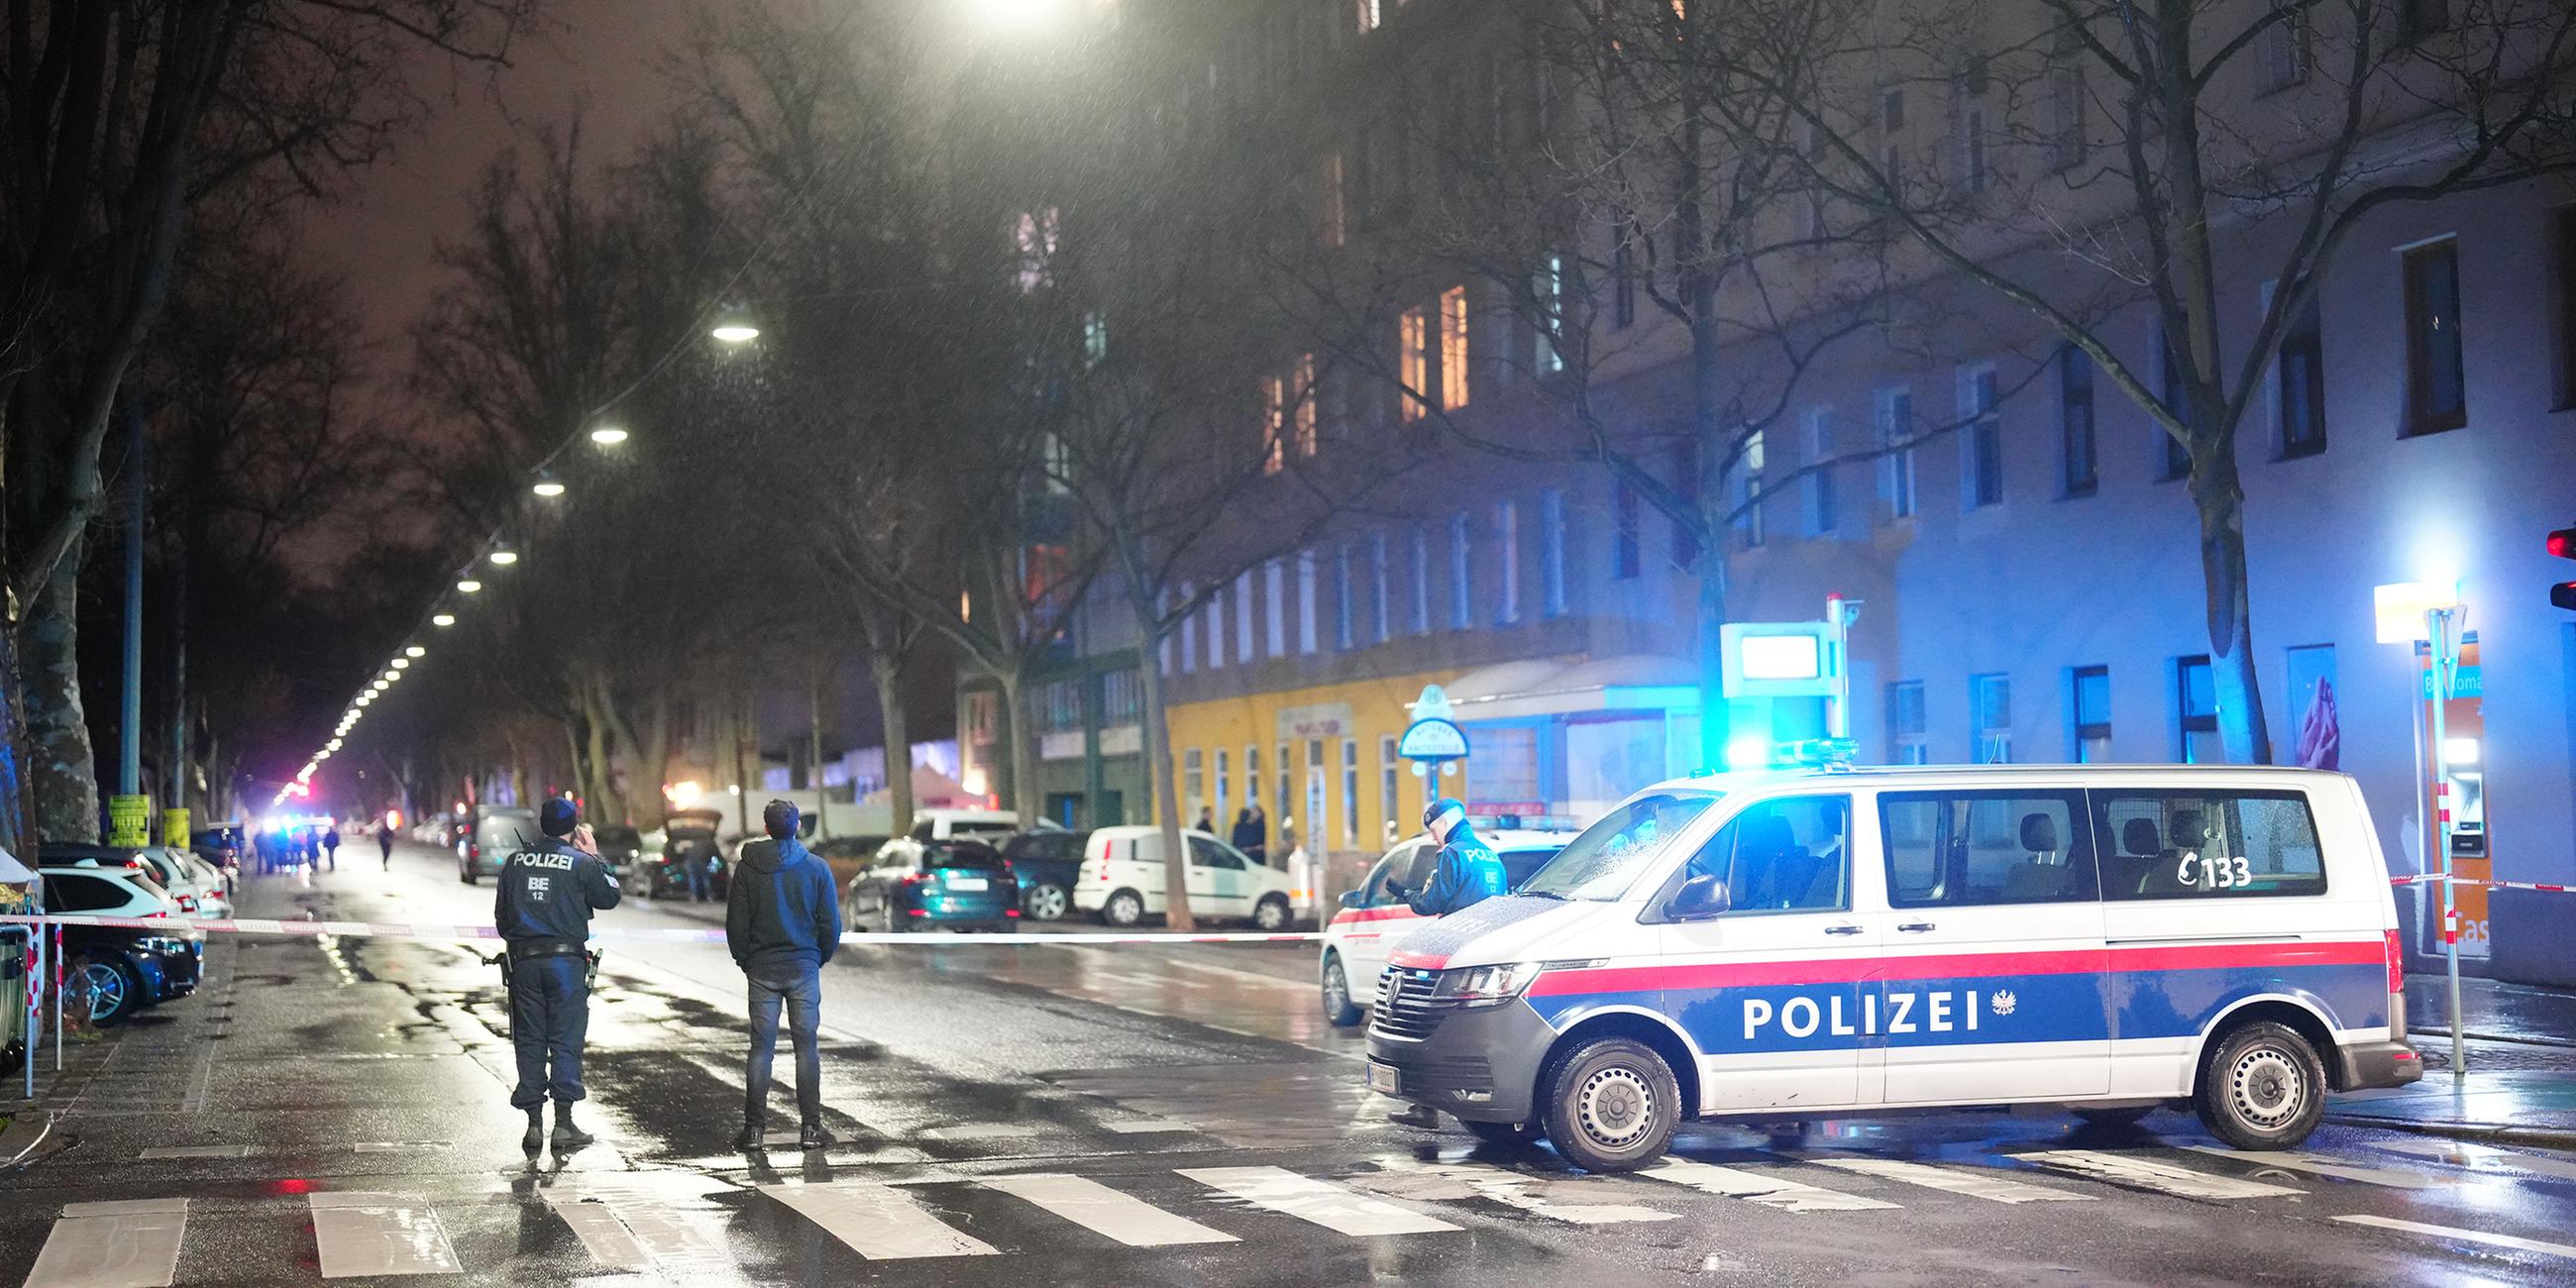 Polizisten ermitteln am Tatort in einem Wiener Bordell